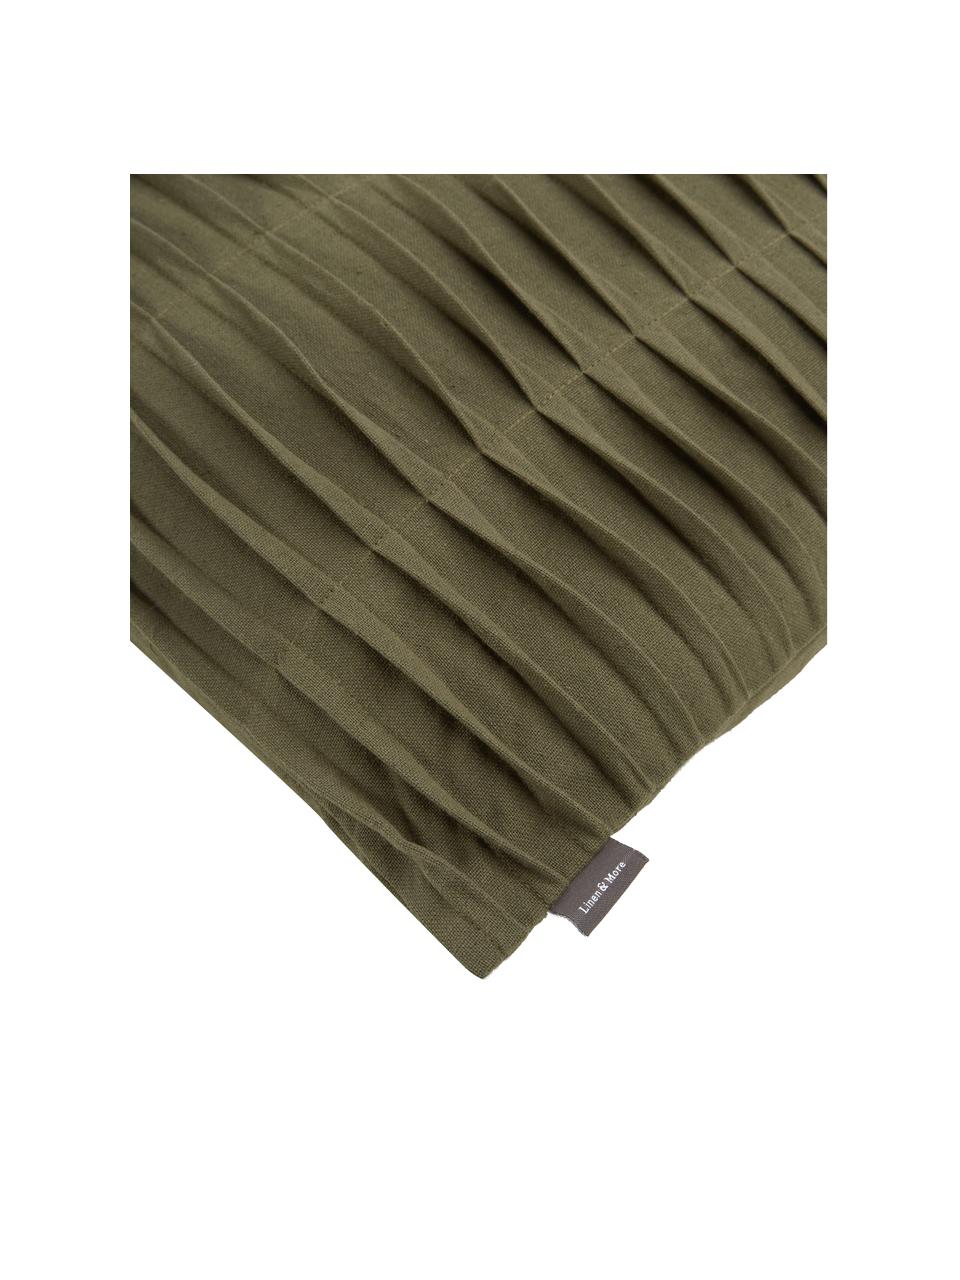 Coussins en coton plissé avec une surface à volants vert olive, avec coutil, 100 % coton, Vert olive, larg. 45 x long. 45 cm